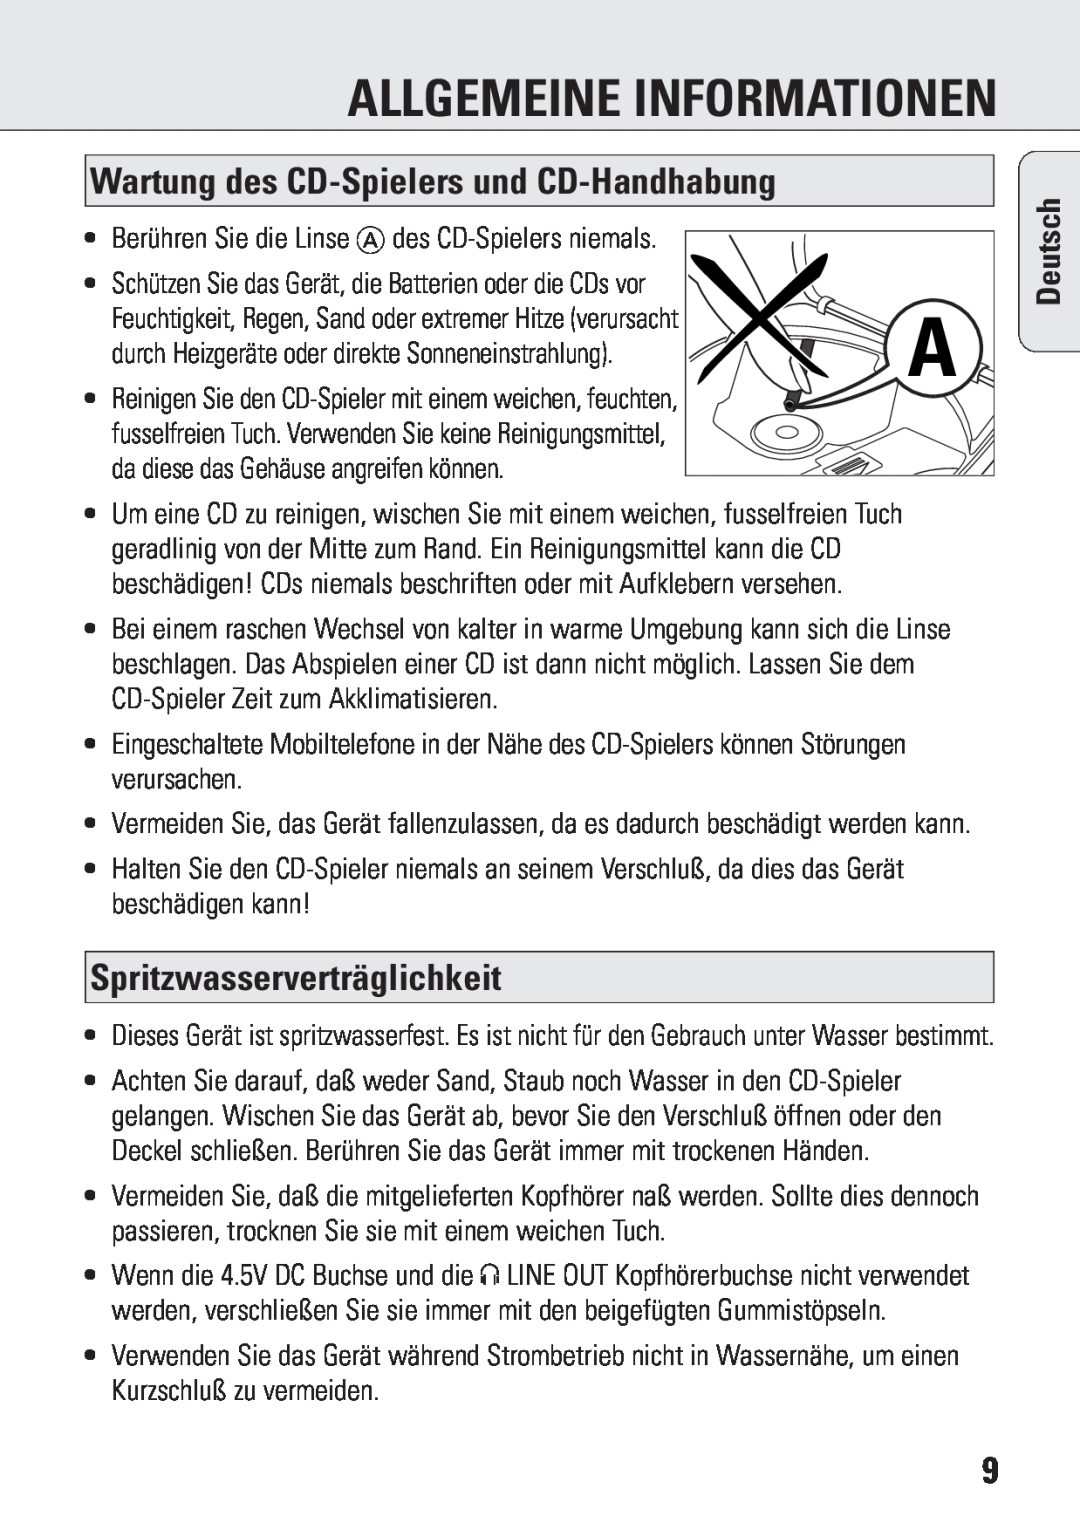 Philips ACT 7583 Allgemeine Informationen, Wartung des CD-Spielersund CD-Handhabung, Spritzwasserverträglichkeit, Deutsch 